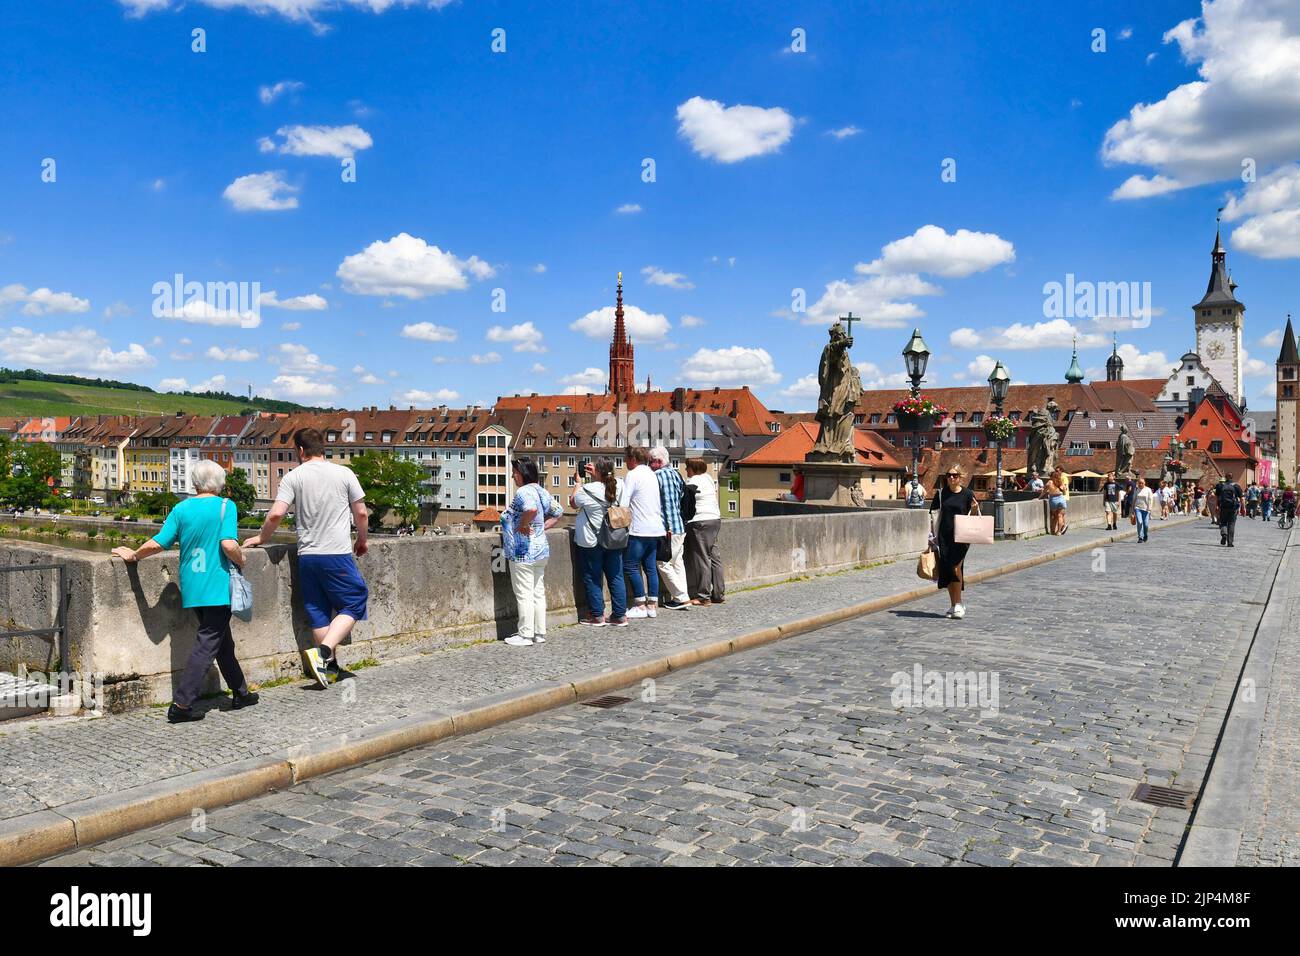 Würzburg, Deutschland - Juni 2022: Touristen an der alten Mainbrücke, die "Alte Mainbrücke" genannt wird, einem Wahrzeichen der Stadt und berühmter Touristenattraktion Stockfoto